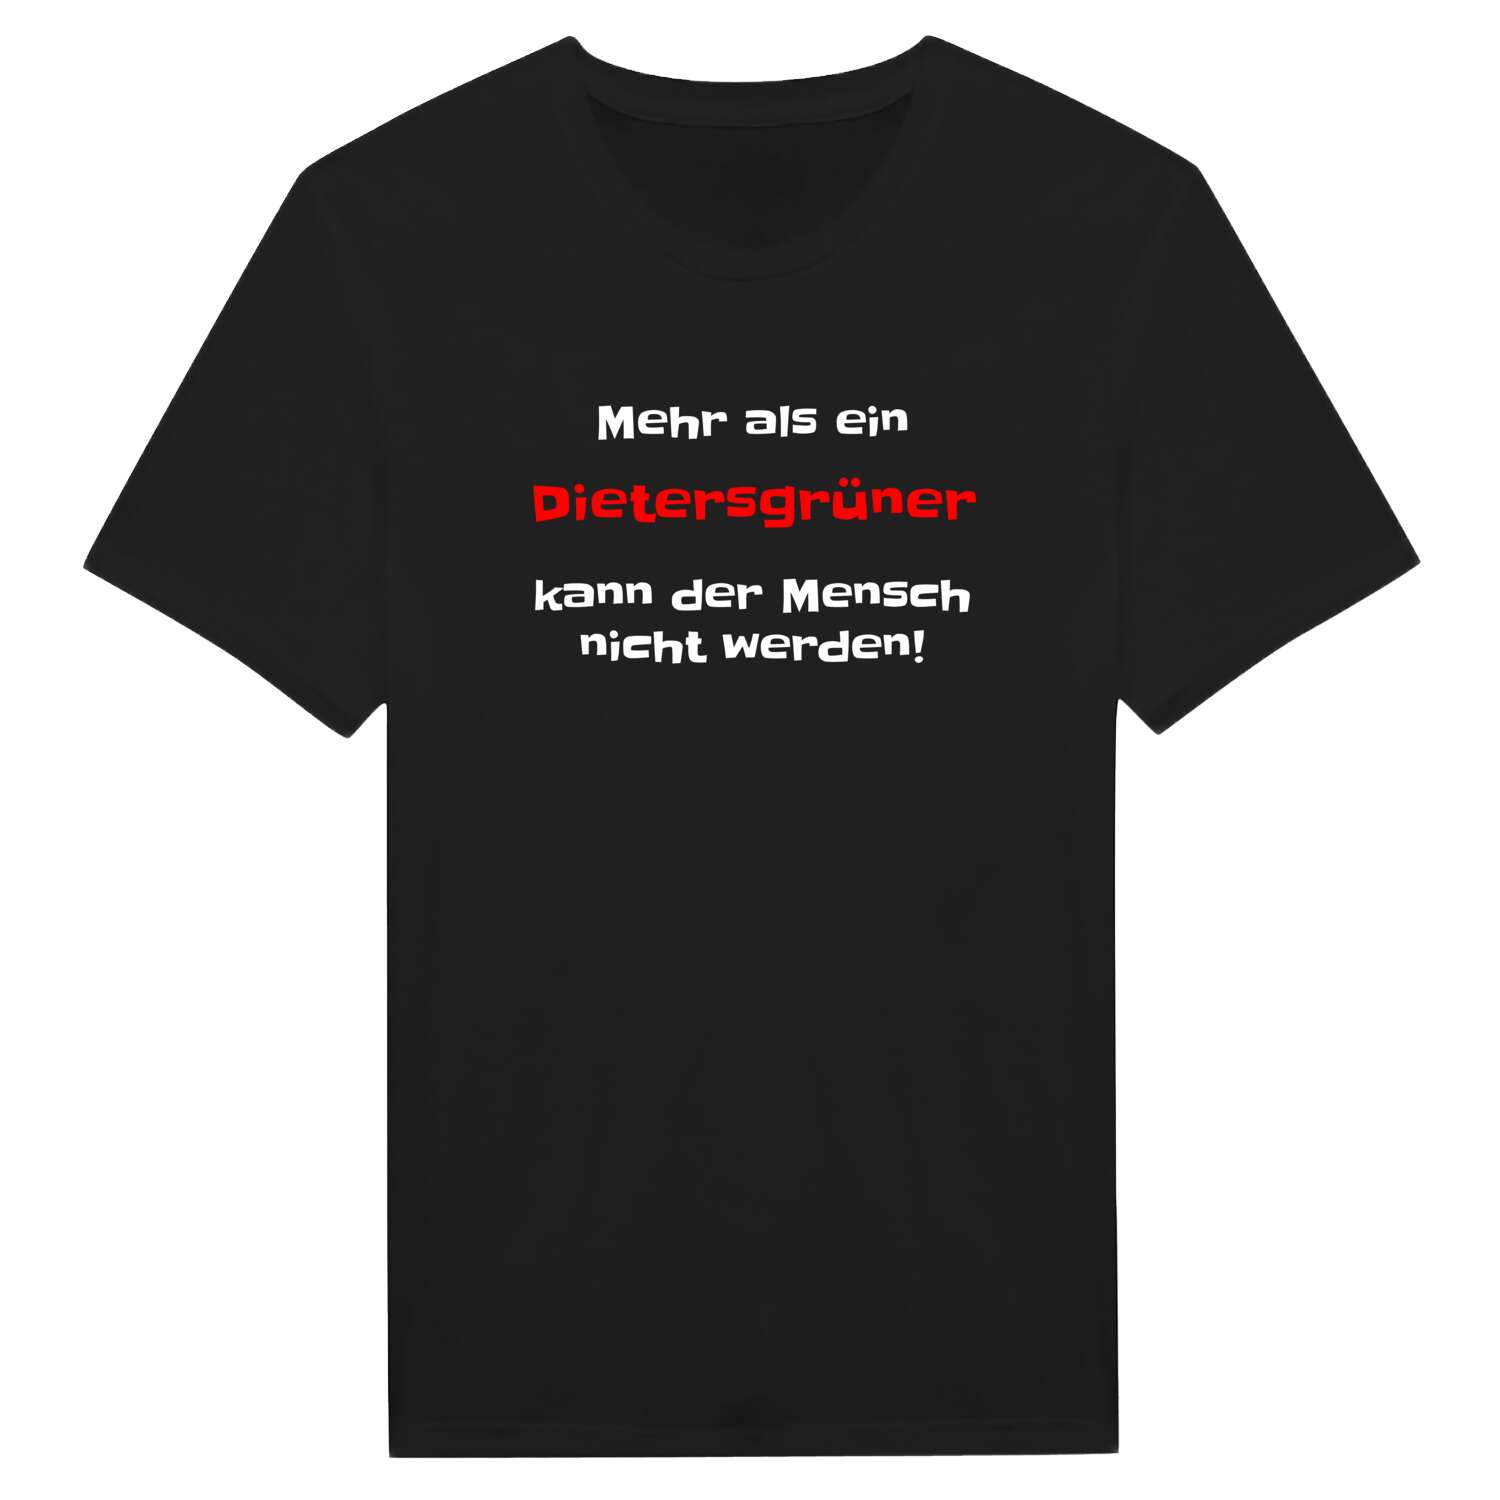 Dietersgrün T-Shirt »Mehr als ein«